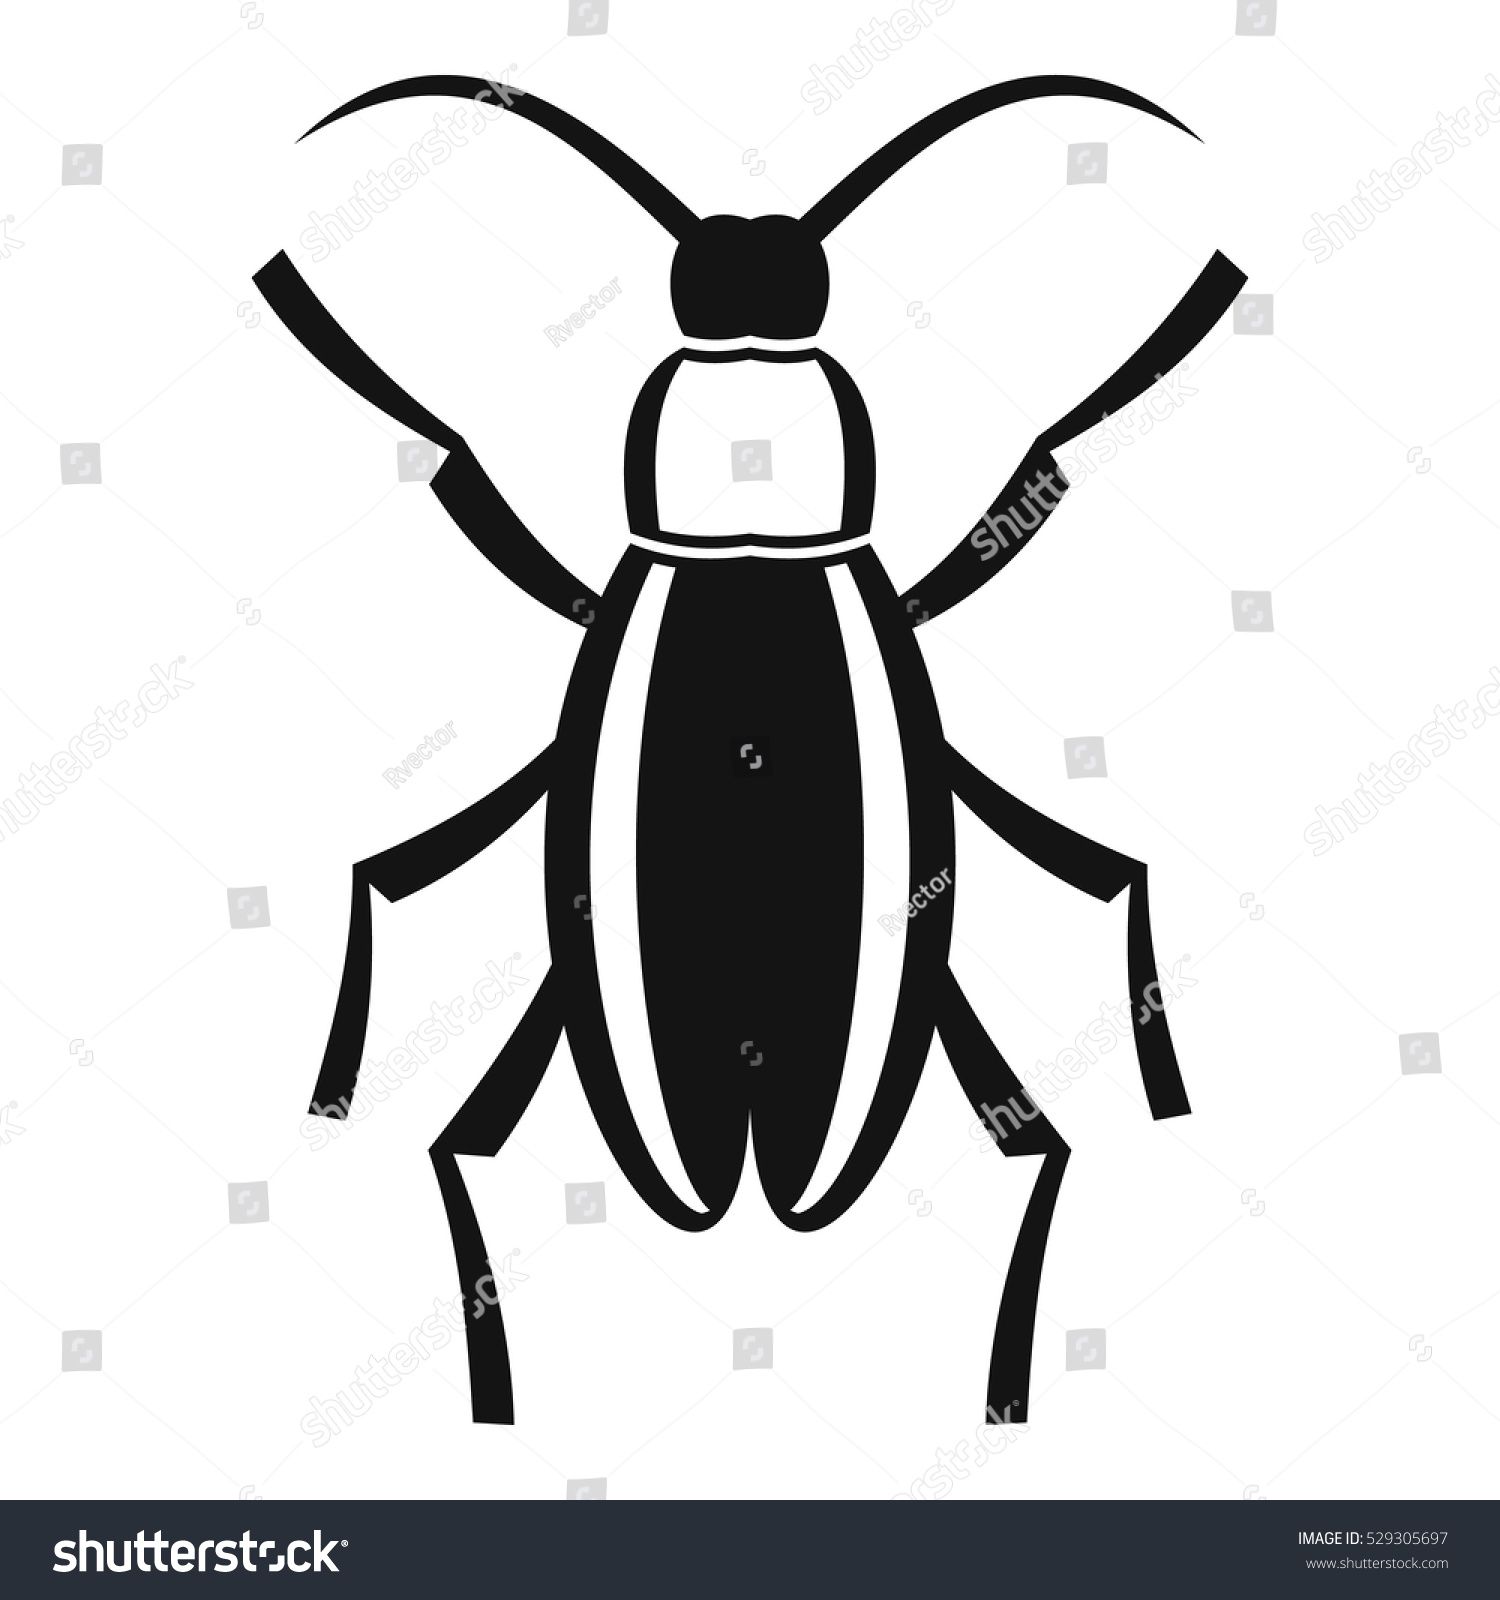 Edit Vectors Free Online - Beetle bug | Shutterstock Editor